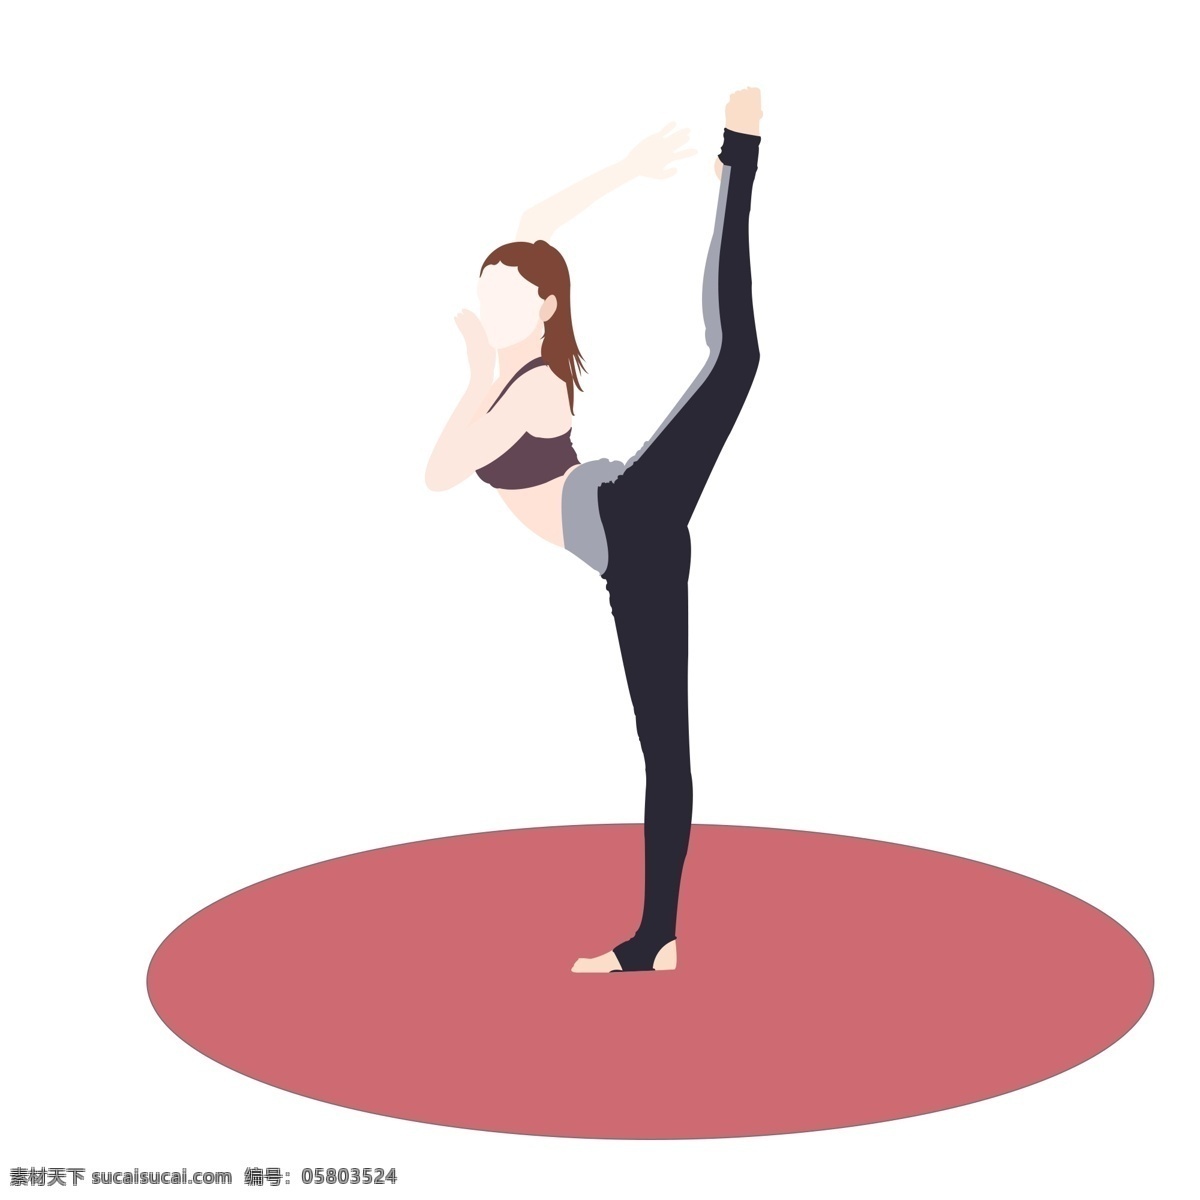 瑜伽 运动 人物 免 扣 矢量图 瑜伽运动 养生运动 有氧运动 女孩 瑜伽垫 运动背心 运动服 运动内衣 黑色 暗红色